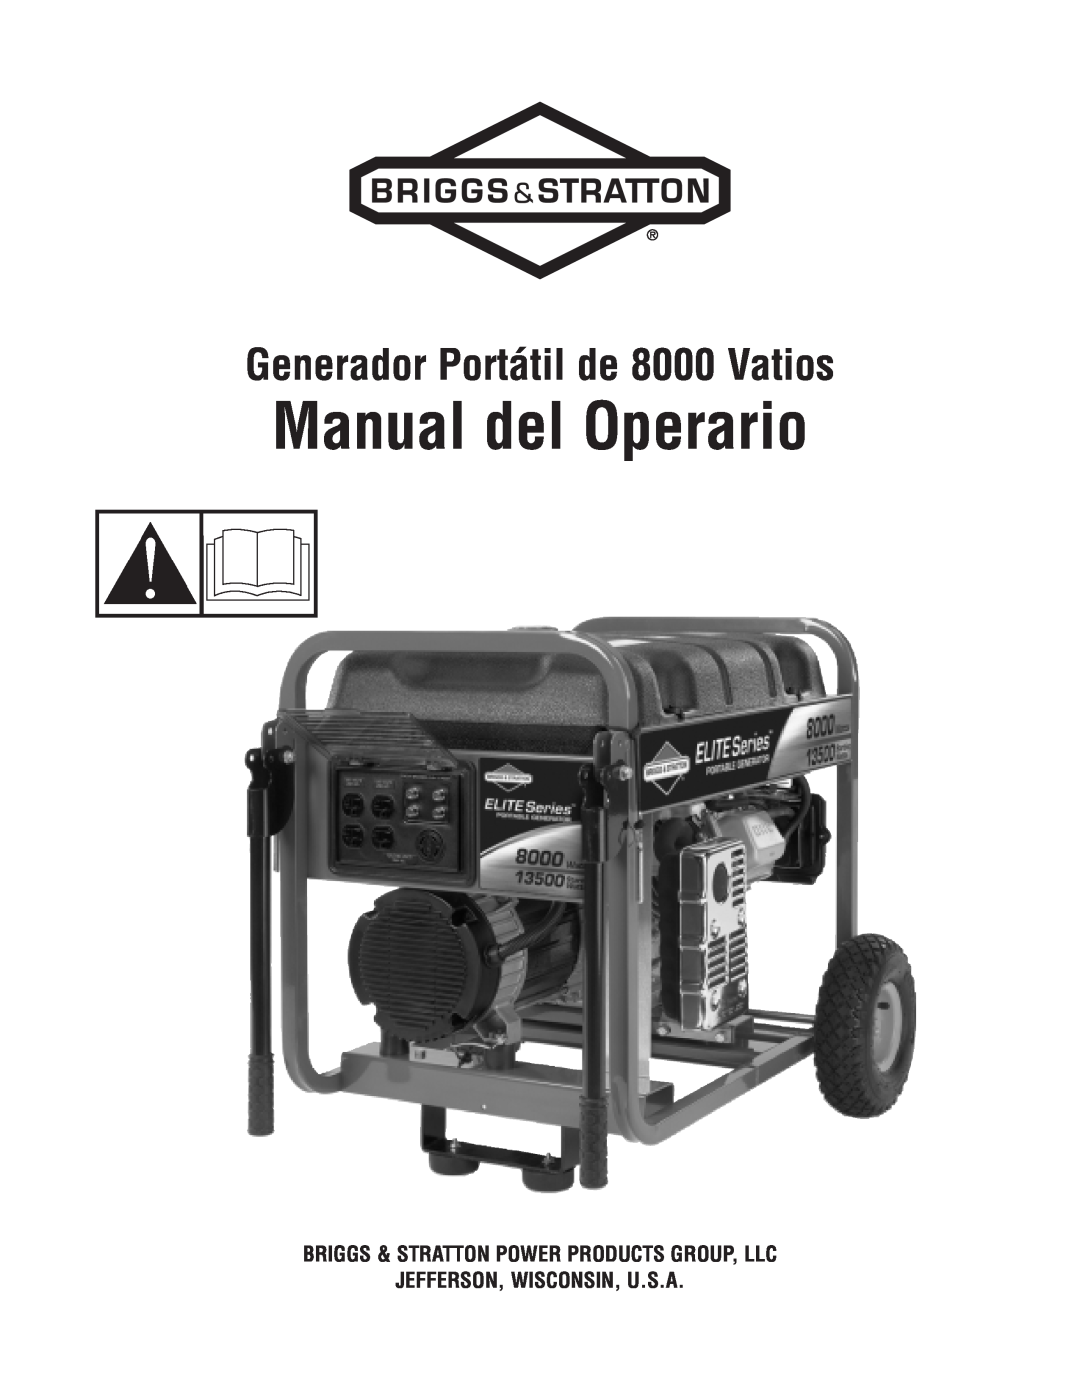 Briggs & Stratton 8000 Watt Portable Generator manual Manual del Operario, Generador Portátil de 8000 Vatios 